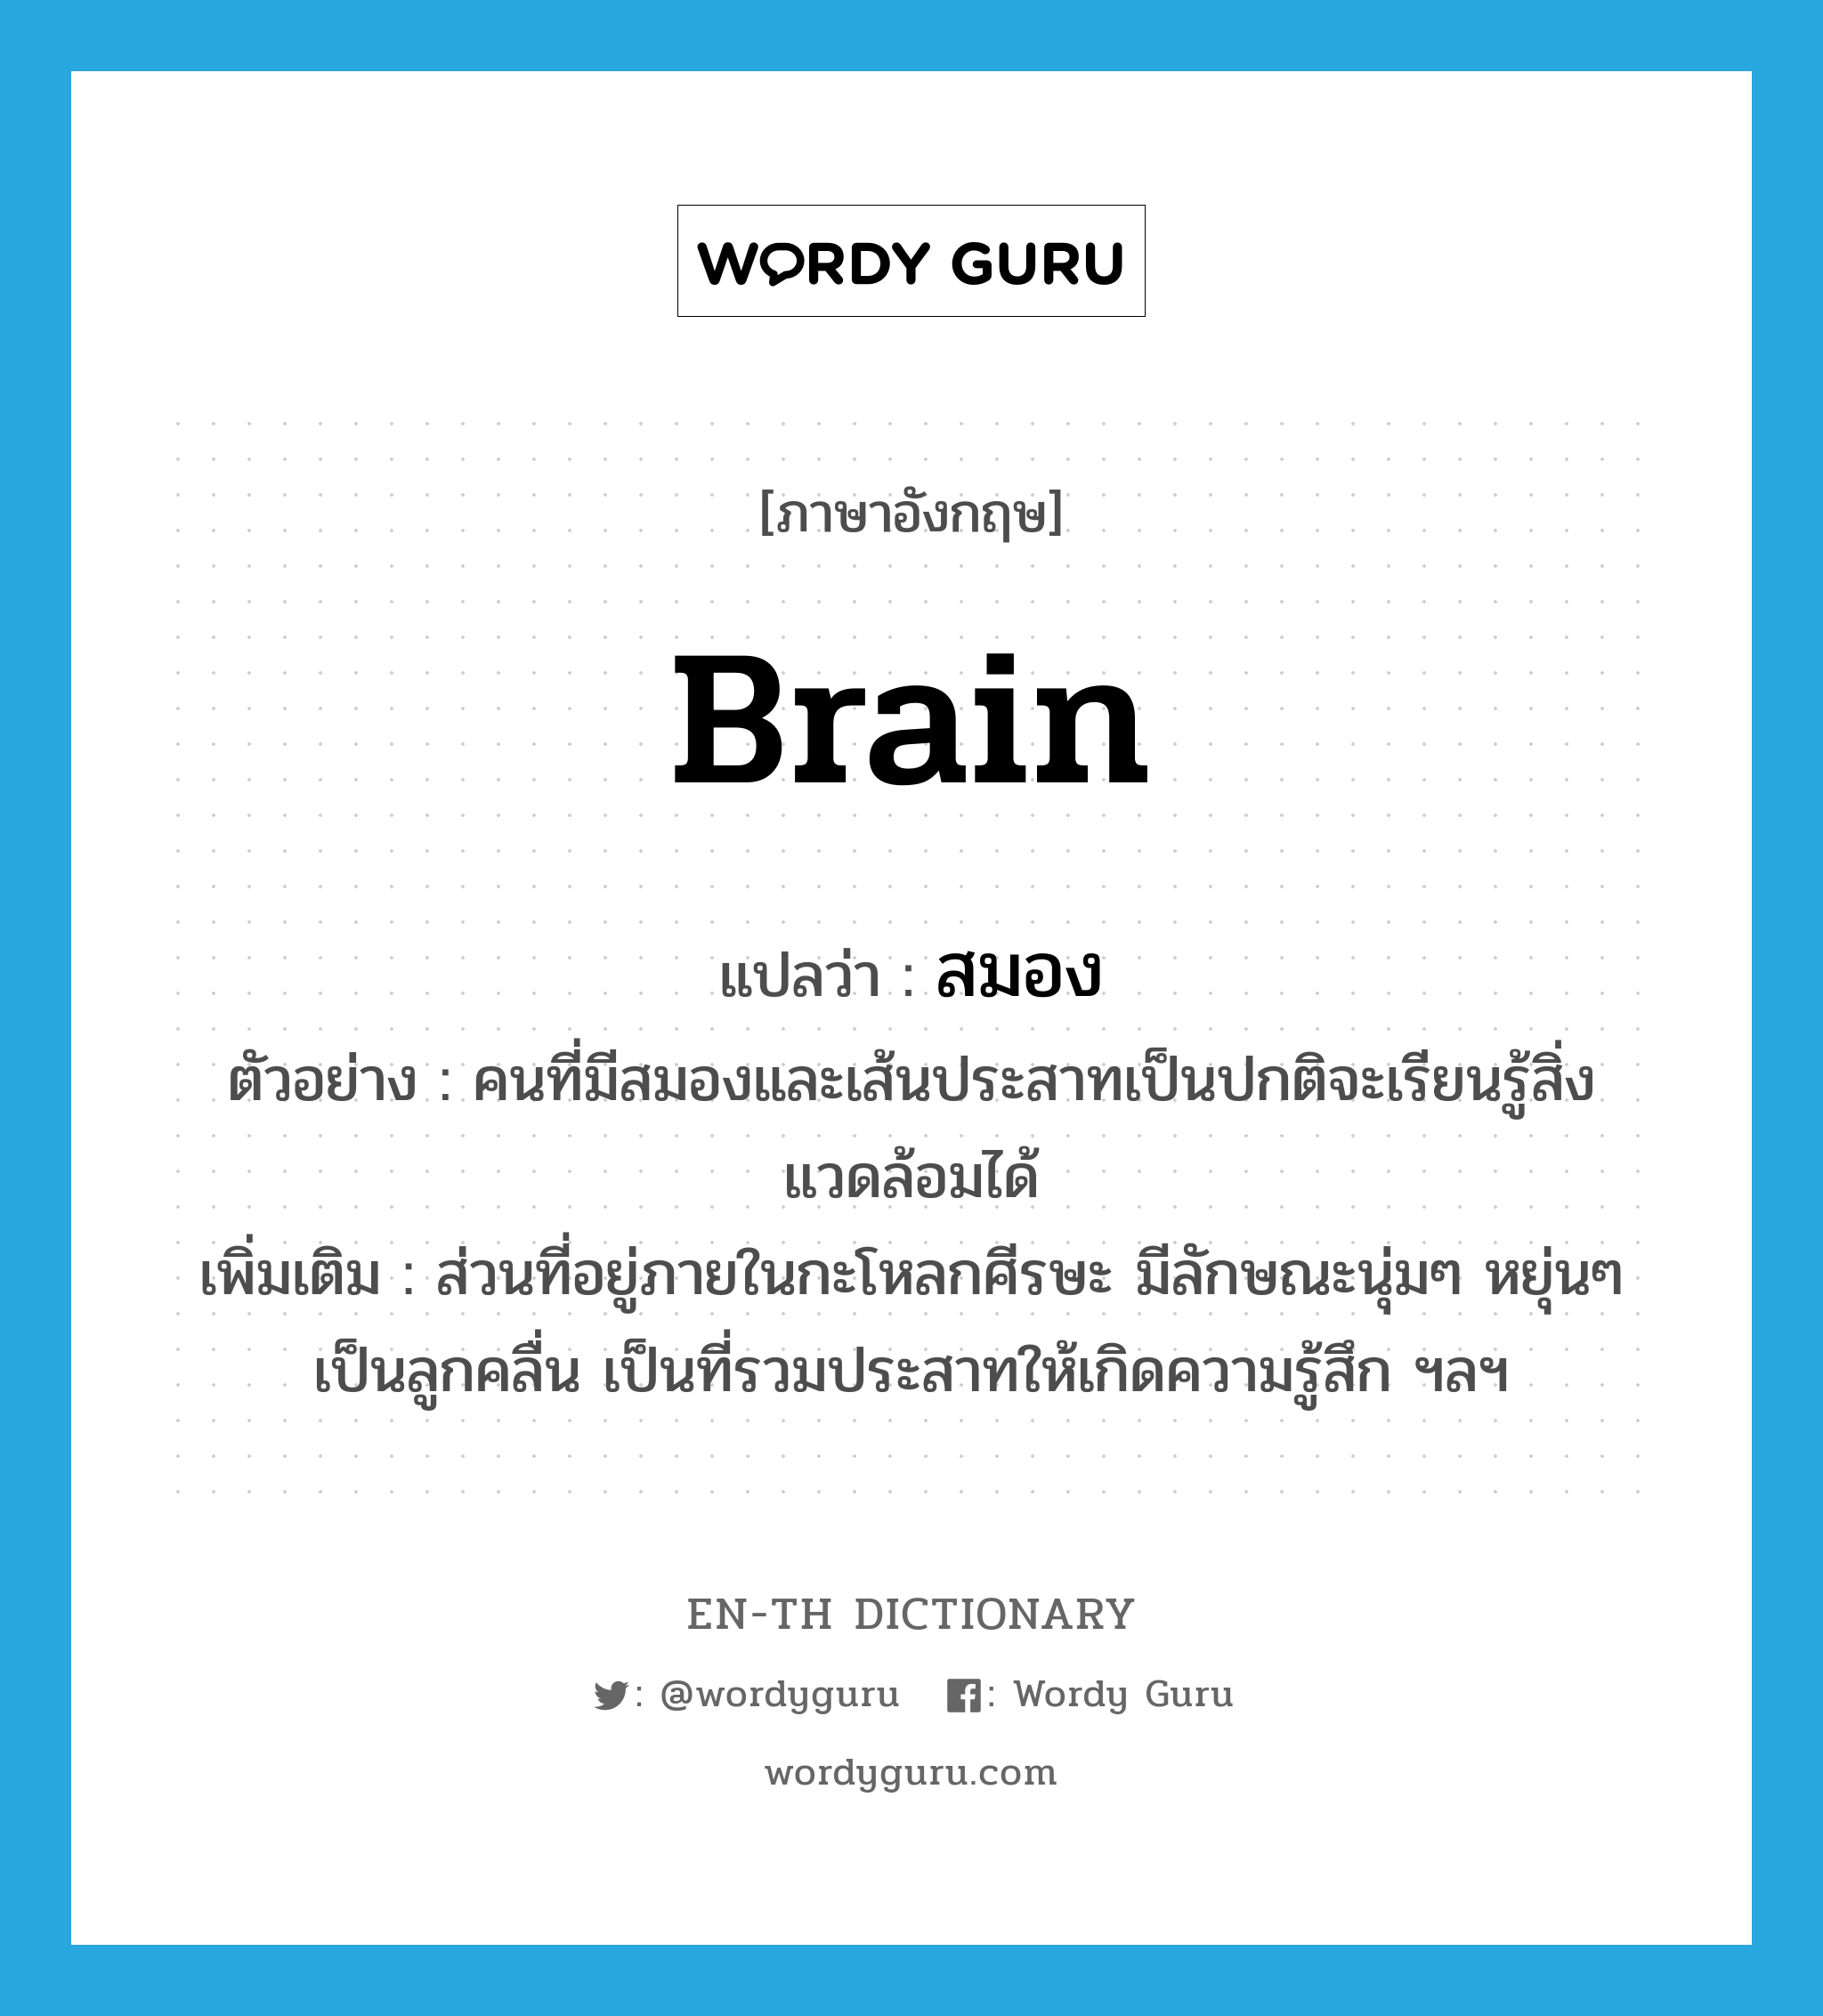 brain แปลว่า?, คำศัพท์ภาษาอังกฤษ brain แปลว่า สมอง ประเภท N ตัวอย่าง คนที่มีสมองและเส้นประสาทเป็นปกติจะเรียนรู้สิ่งแวดล้อมได้ เพิ่มเติม ส่วนที่อยู่ภายในกะโหลกศีรษะ มีลักษณะนุ่มๆ หยุ่นๆ เป็นลูกคลื่น เป็นที่รวมประสาทให้เกิดความรู้สึก ฯลฯ หมวด N